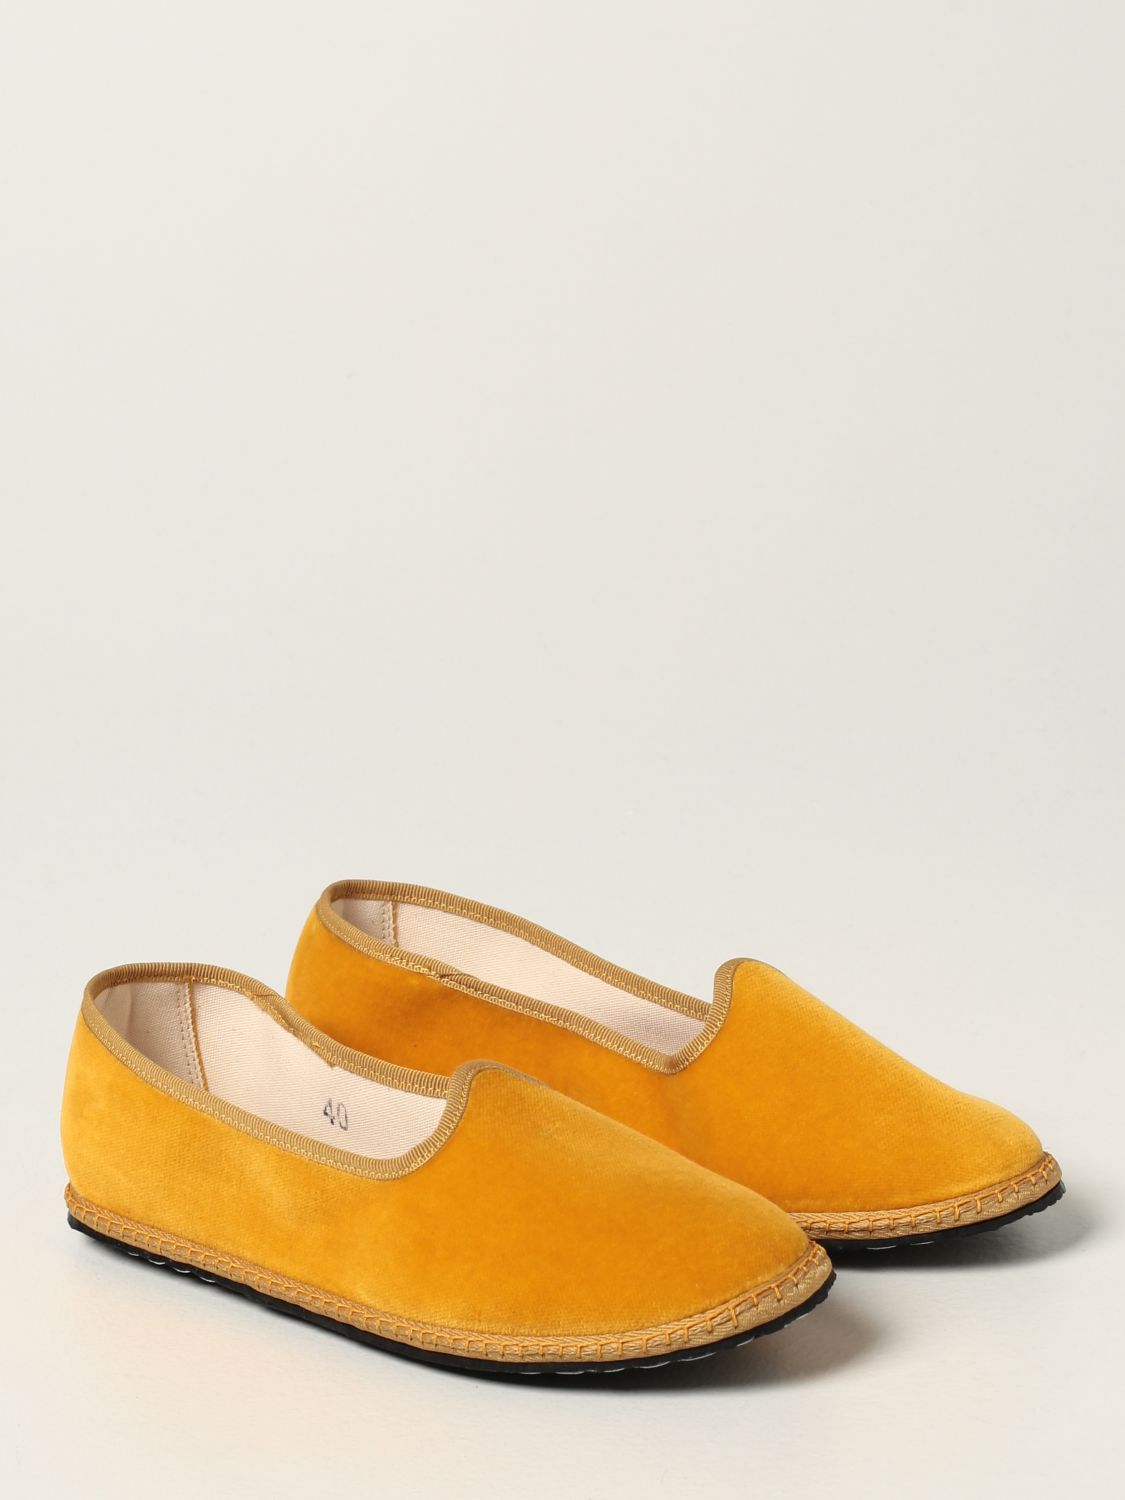 Мокасины Vibi Venezia: Обувь Женское Vibivenezia оранжевый 2